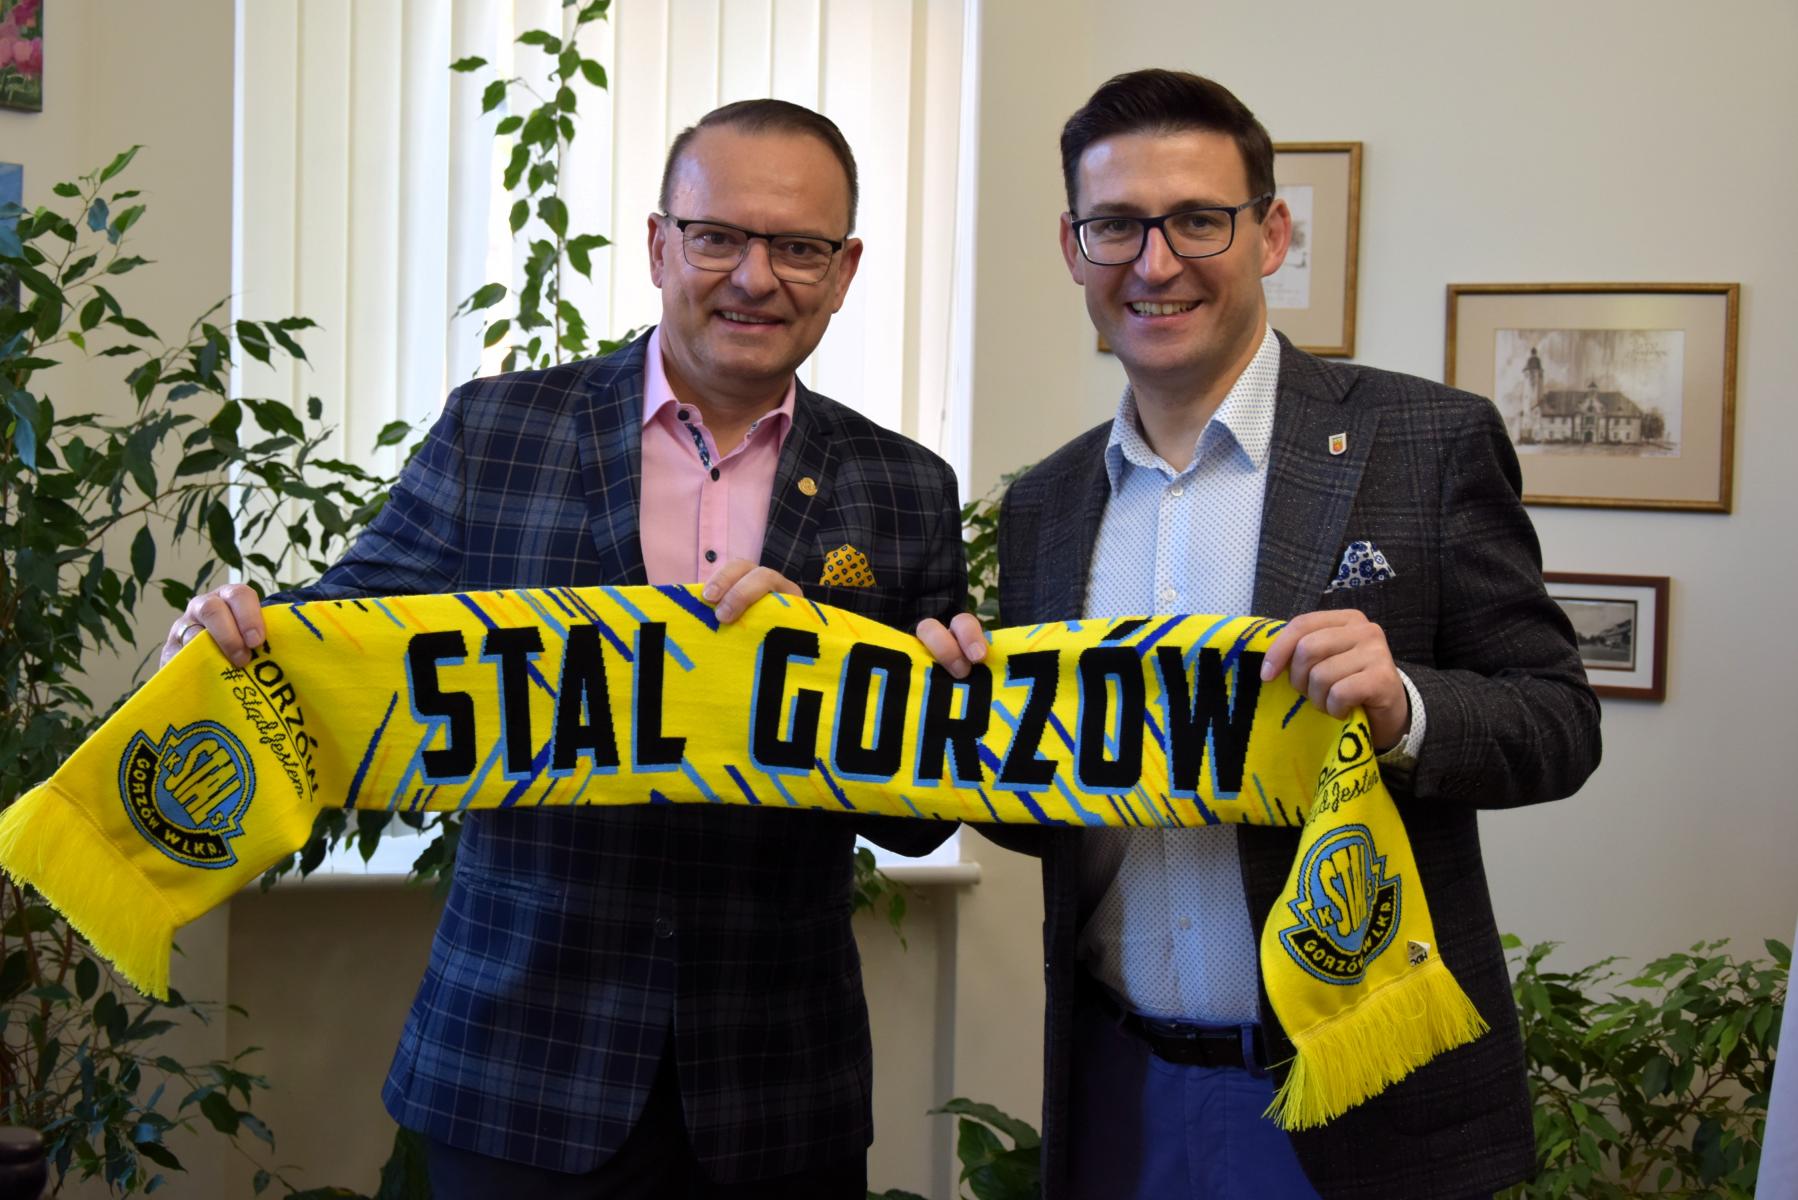 Od lewej w gabinecie stoi Wlademar Sadowski i Grzegorz Kulbicki. W dłoniach razem trzymają rozłożony żółty szalik z czarnym napisem Stal Gorzów.